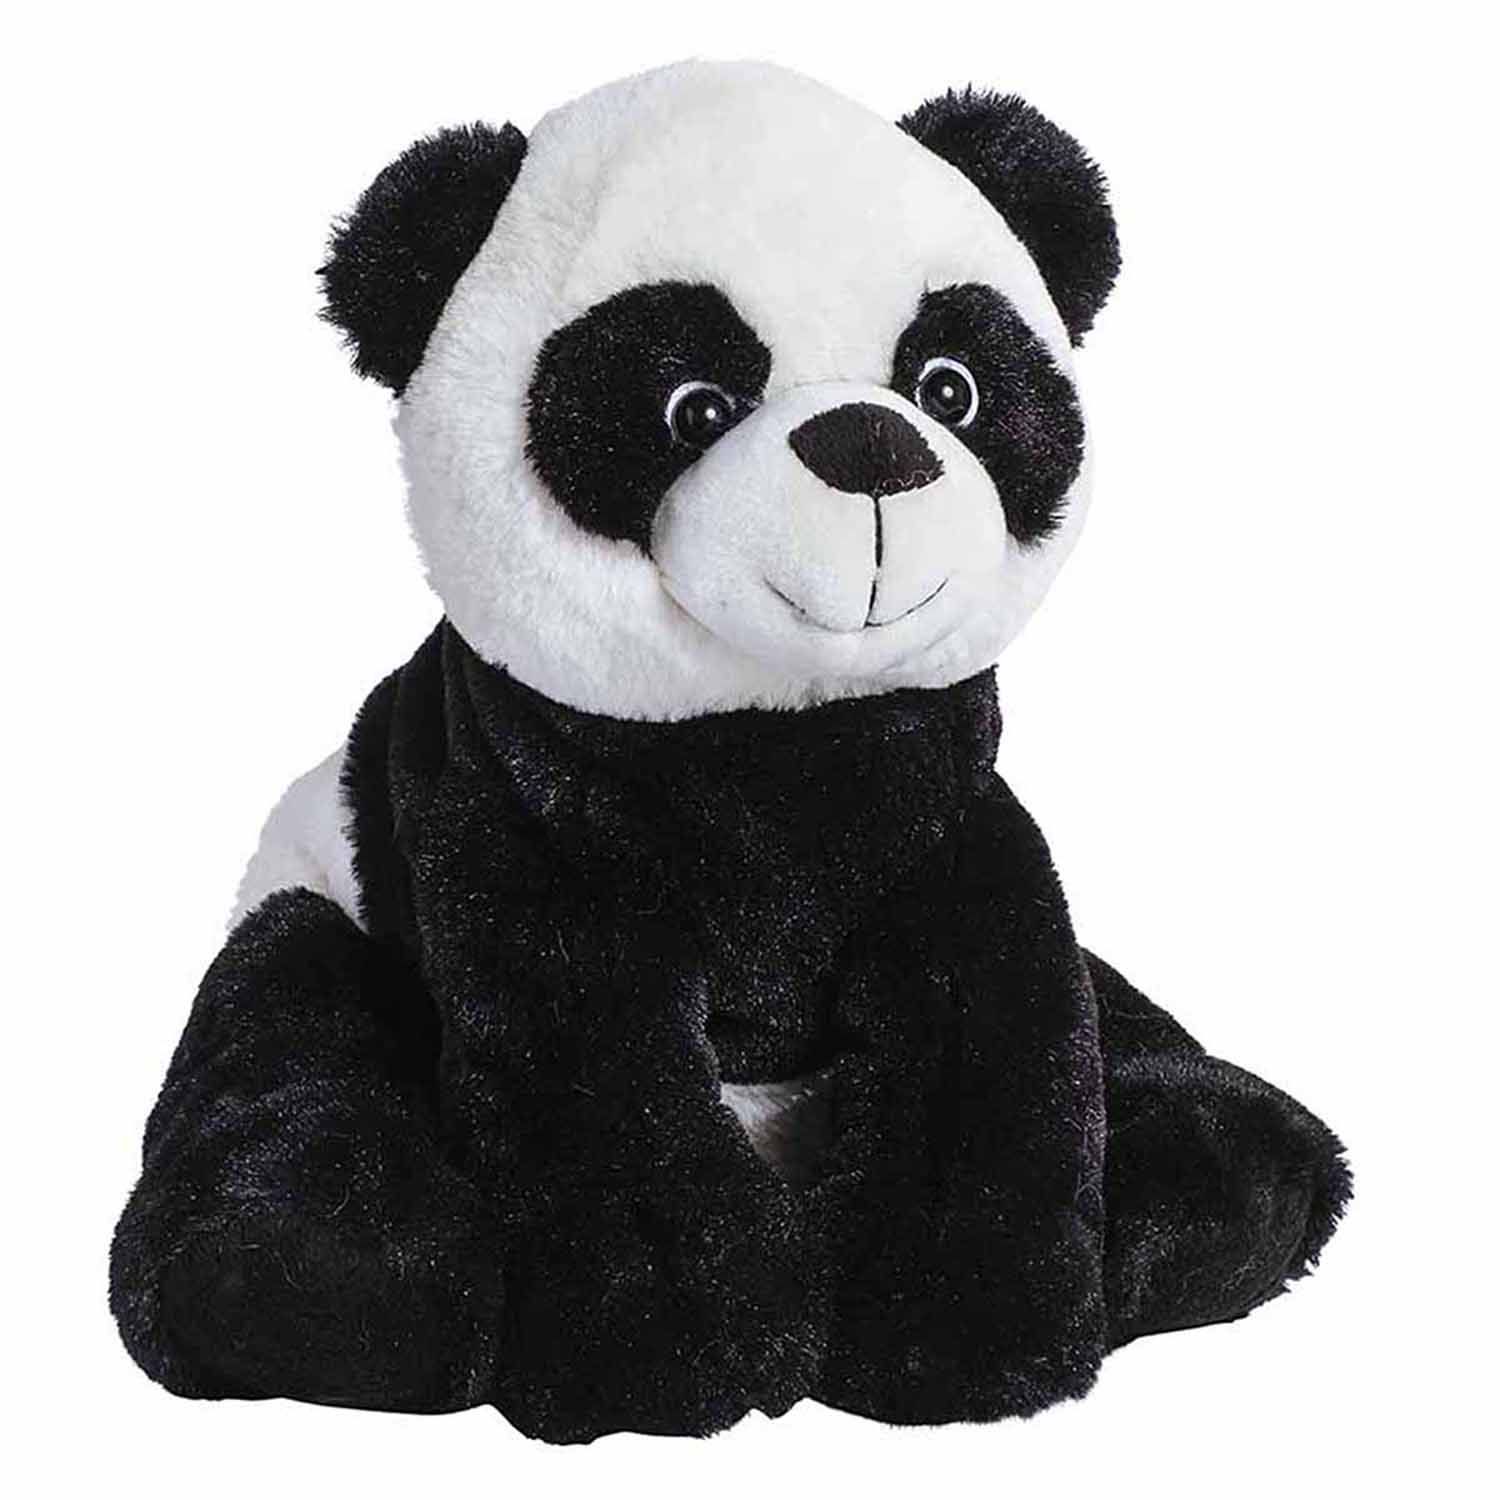 Buy panda. Molli Панда 7936sw MT. Мягкая игрушка «Панда», 30 см. Miniso Панда игрушка Панда. Molli Овечка 8482sw MT.